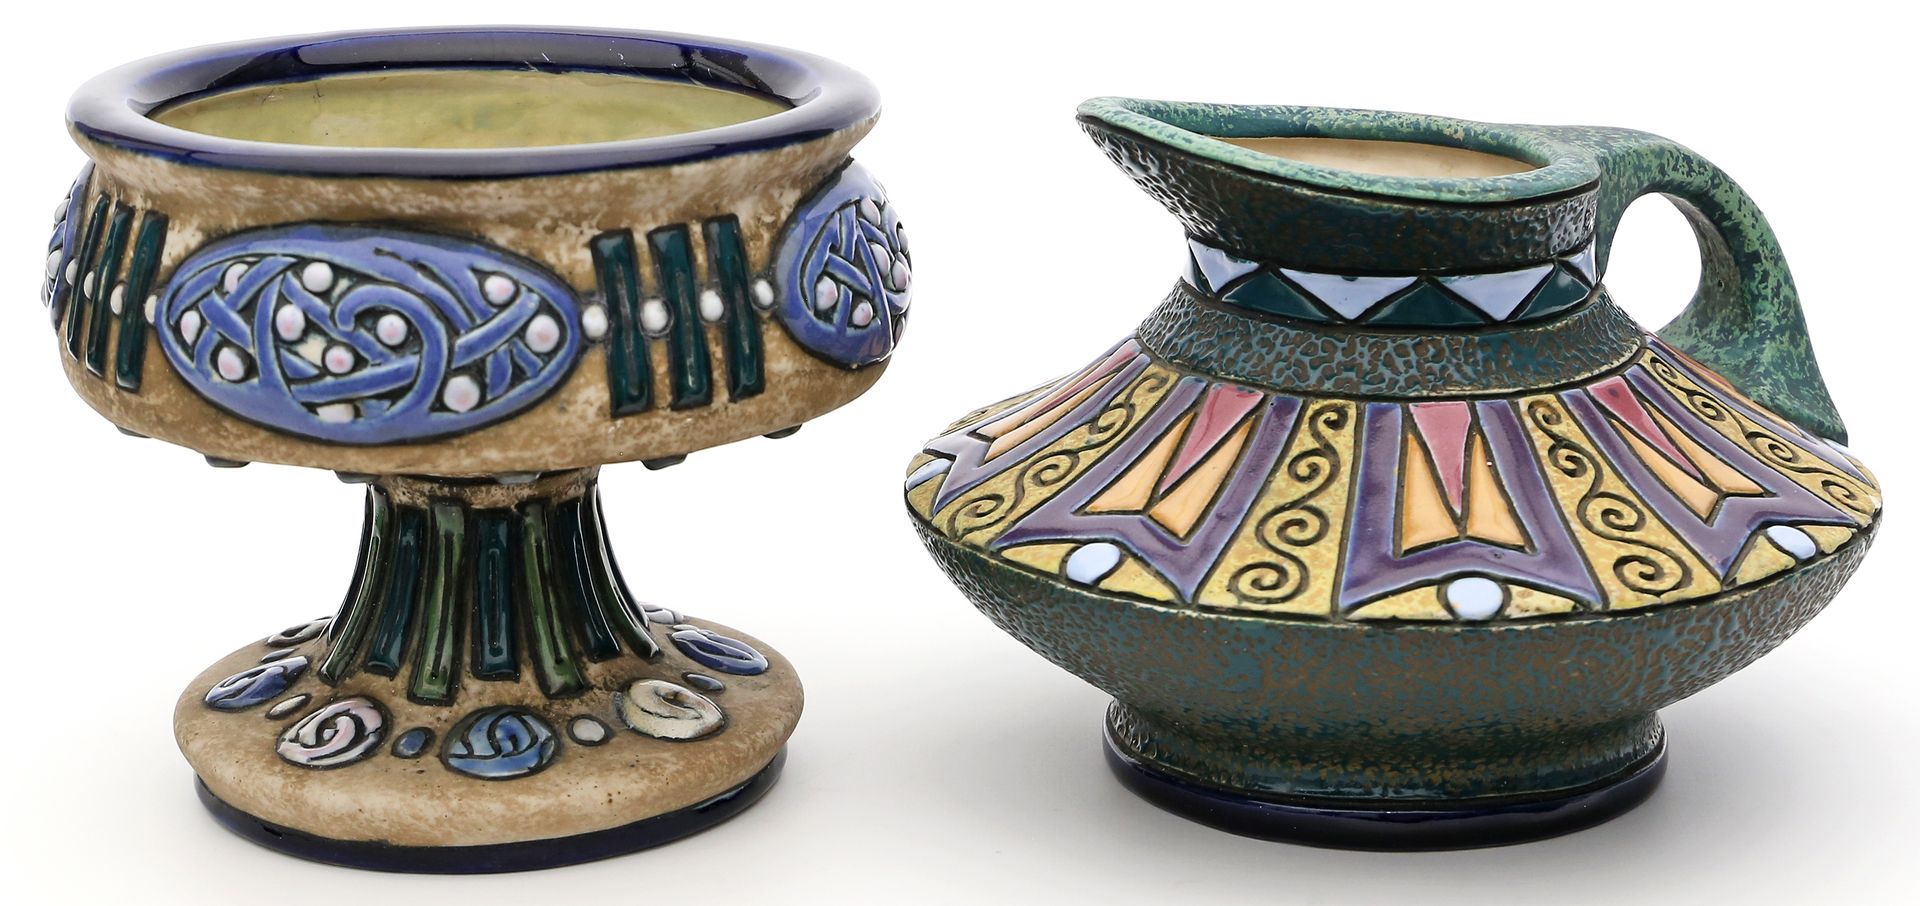 Krug und Fußschale, Amphora.